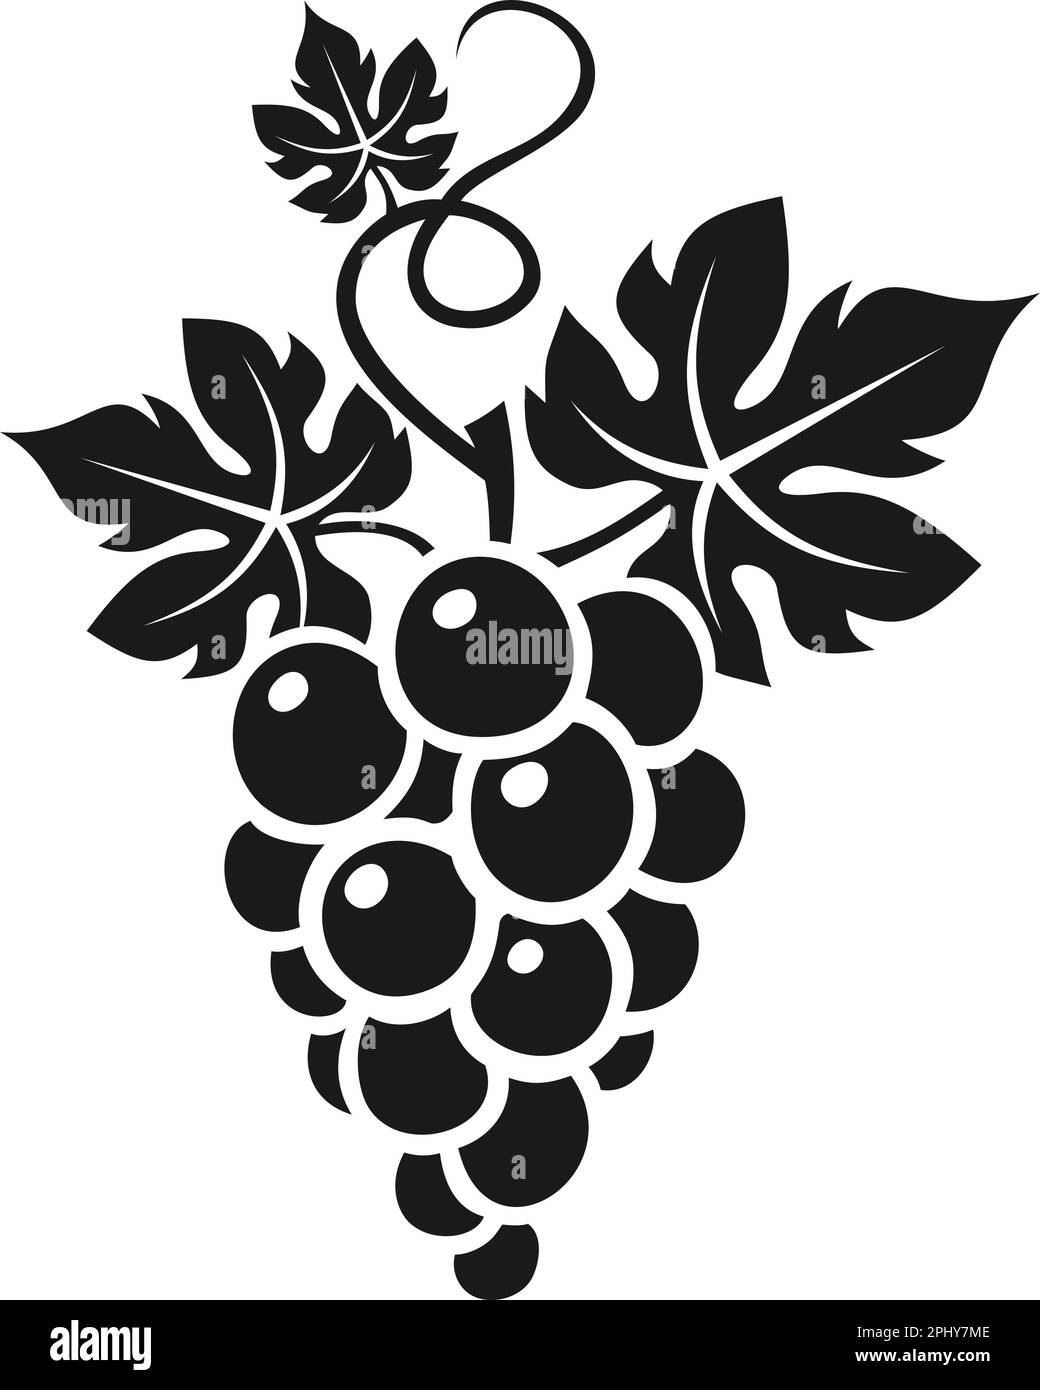 Bouquet de raisins avec des feuilles. Silhouette noire vectorielle de raisins isolés sur fond blanc Illustration de Vecteur